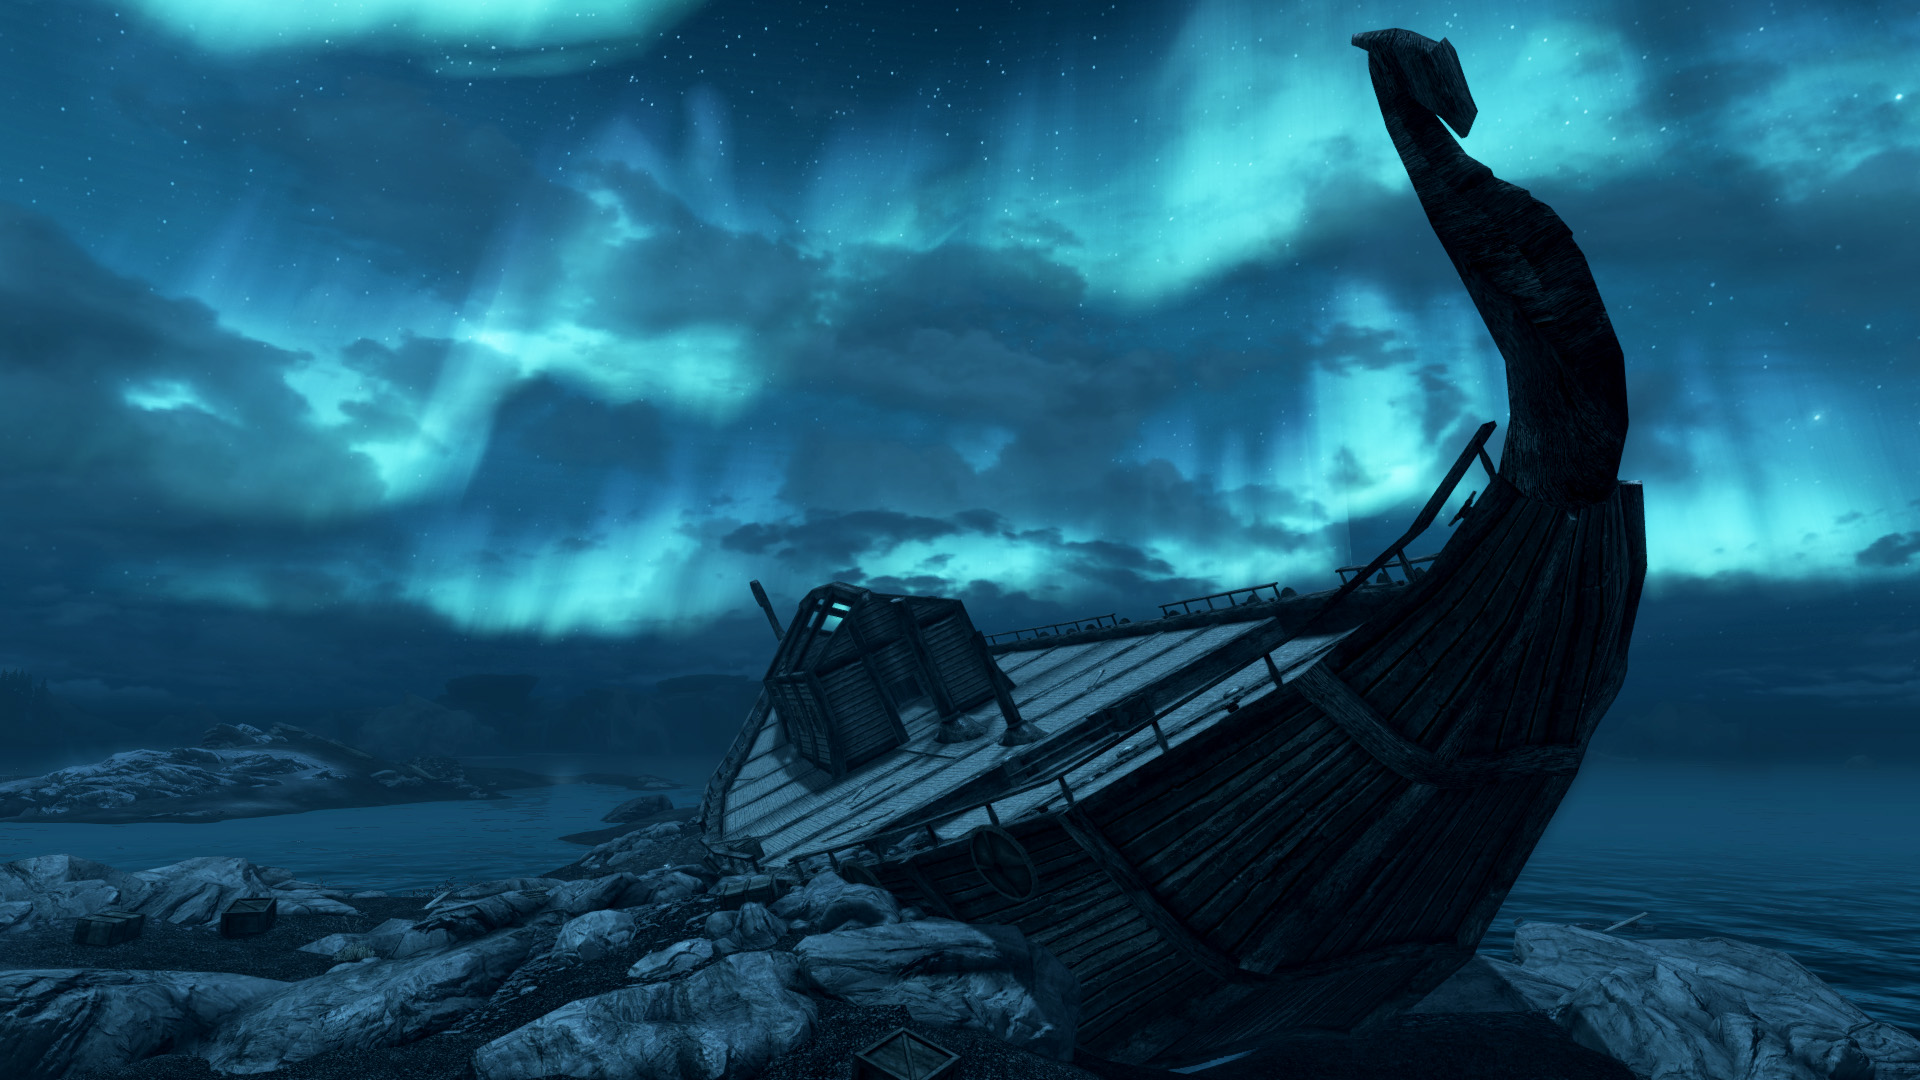 Shipwreck | Elder Scrolls | FANDOM powered by Wikia